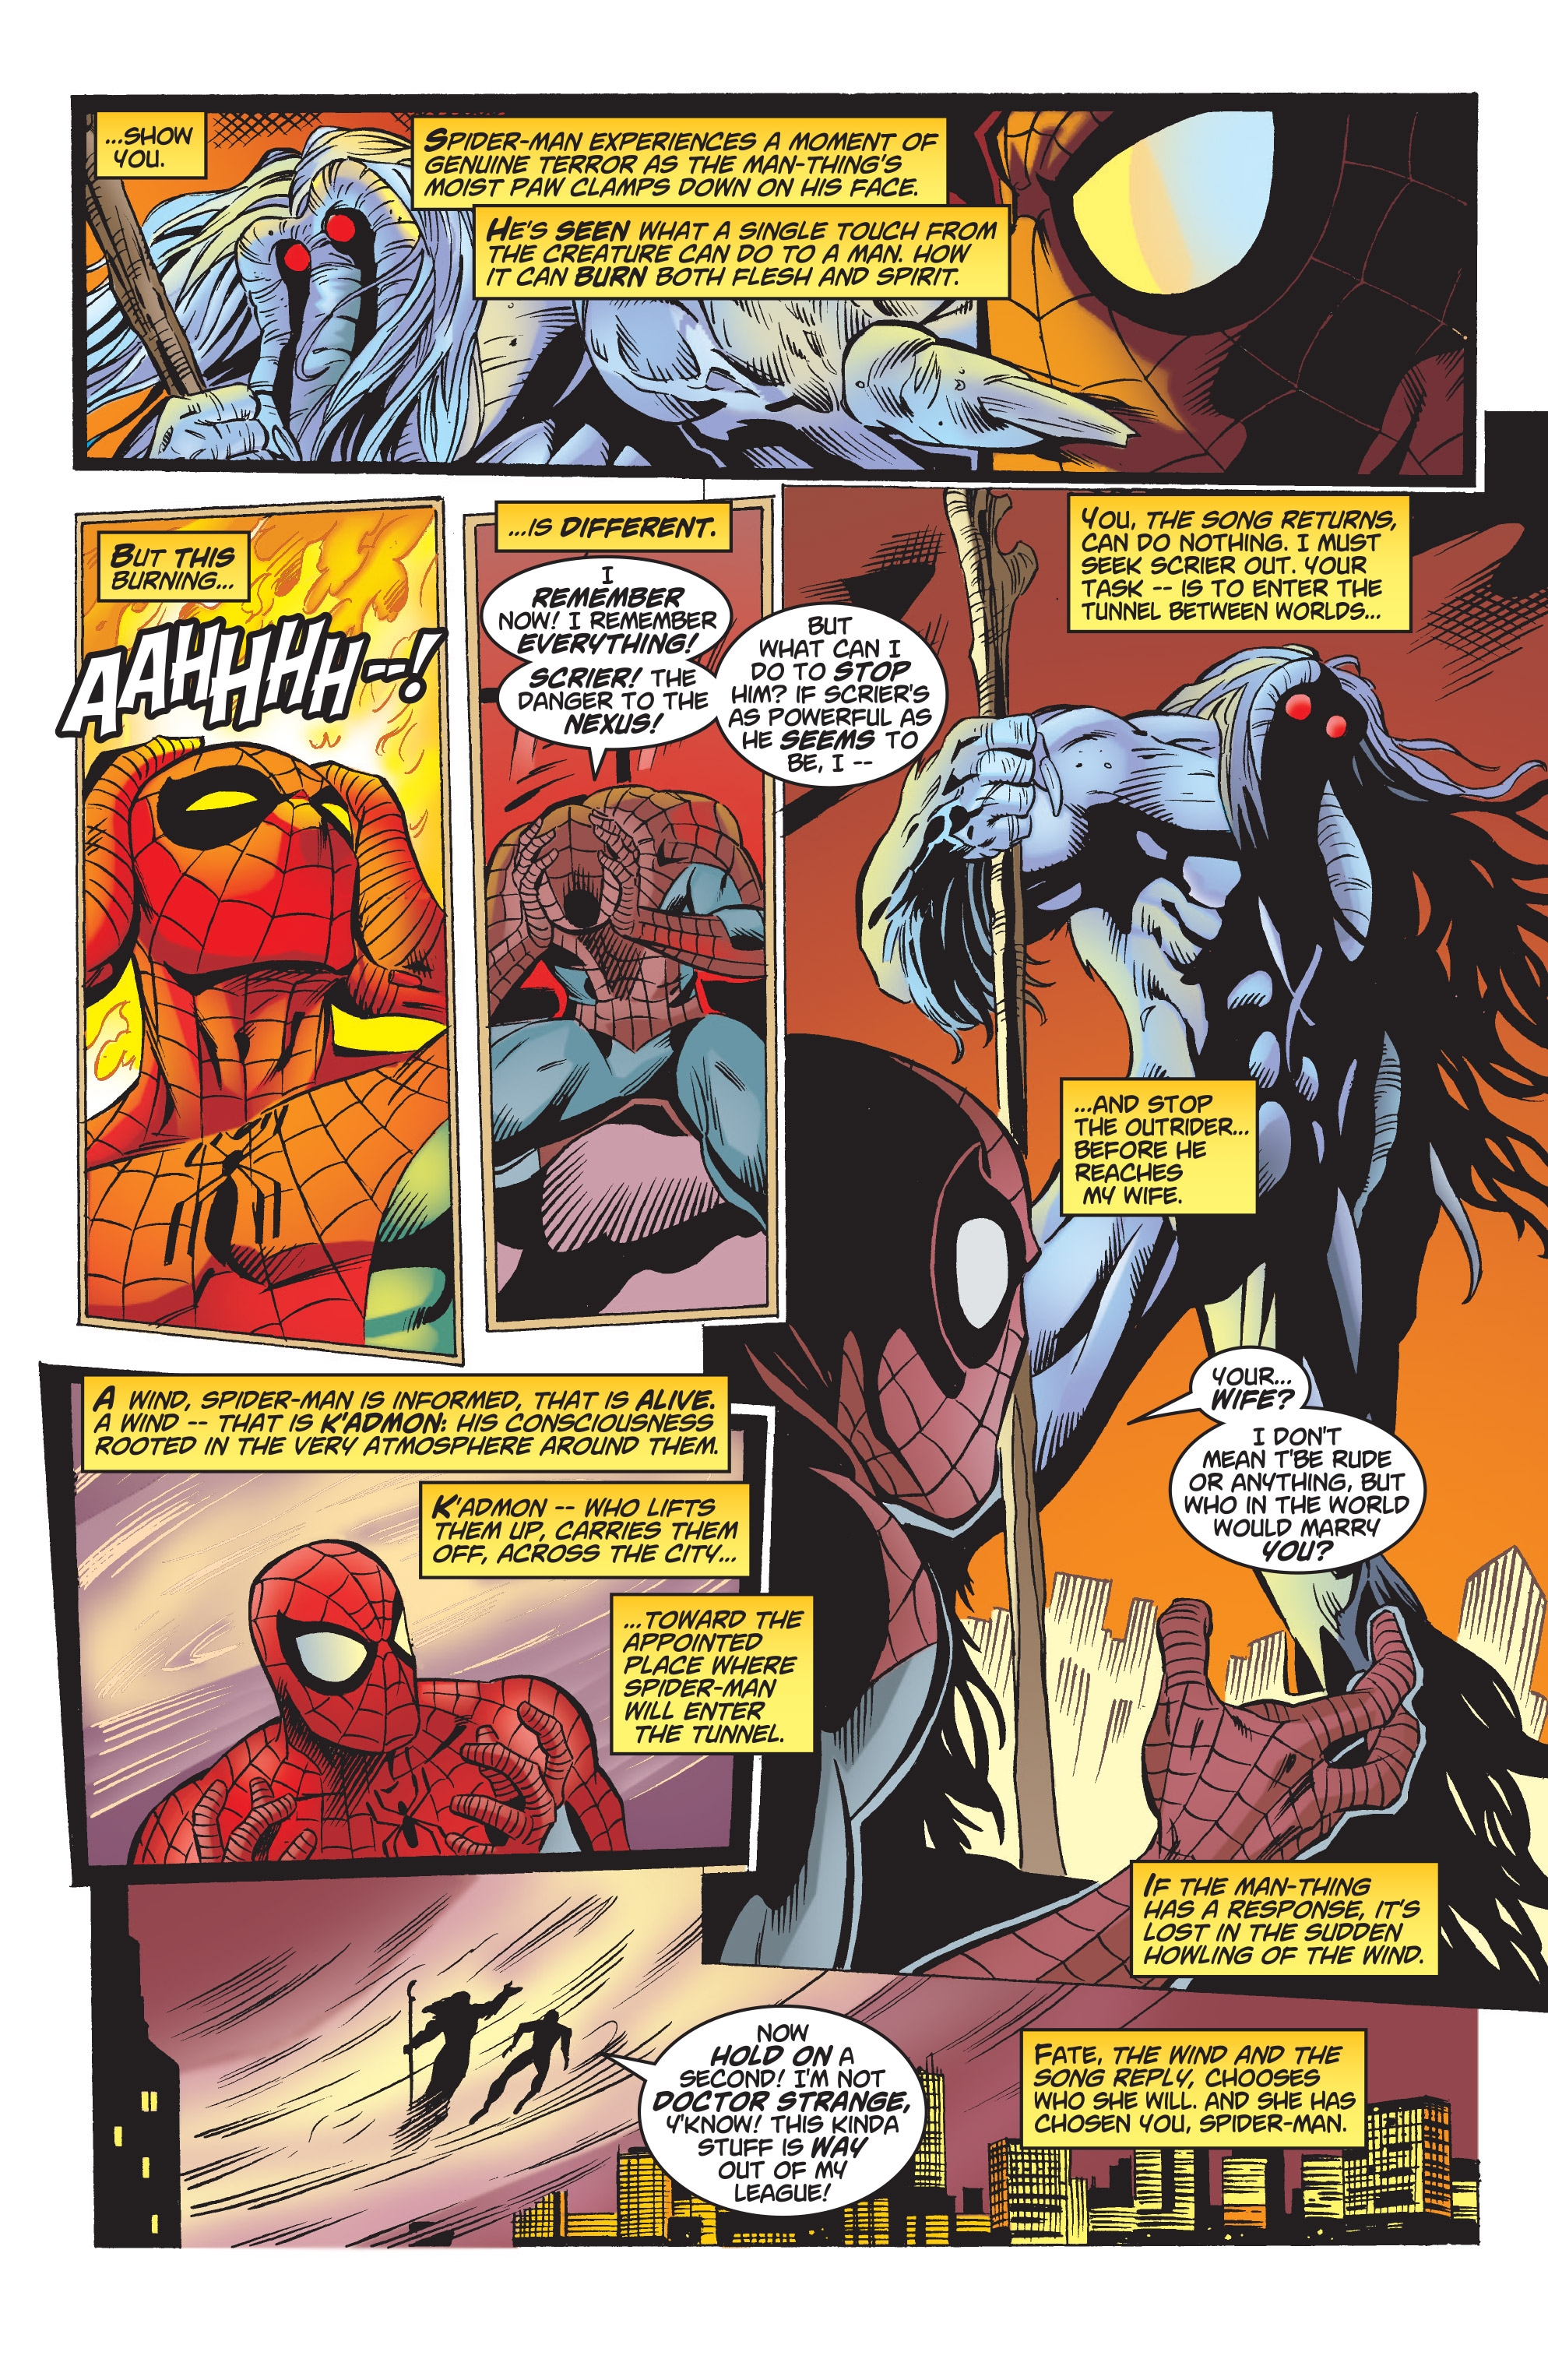 分享漫画《蜘蛛侠彼得帕克》(1999年刊)